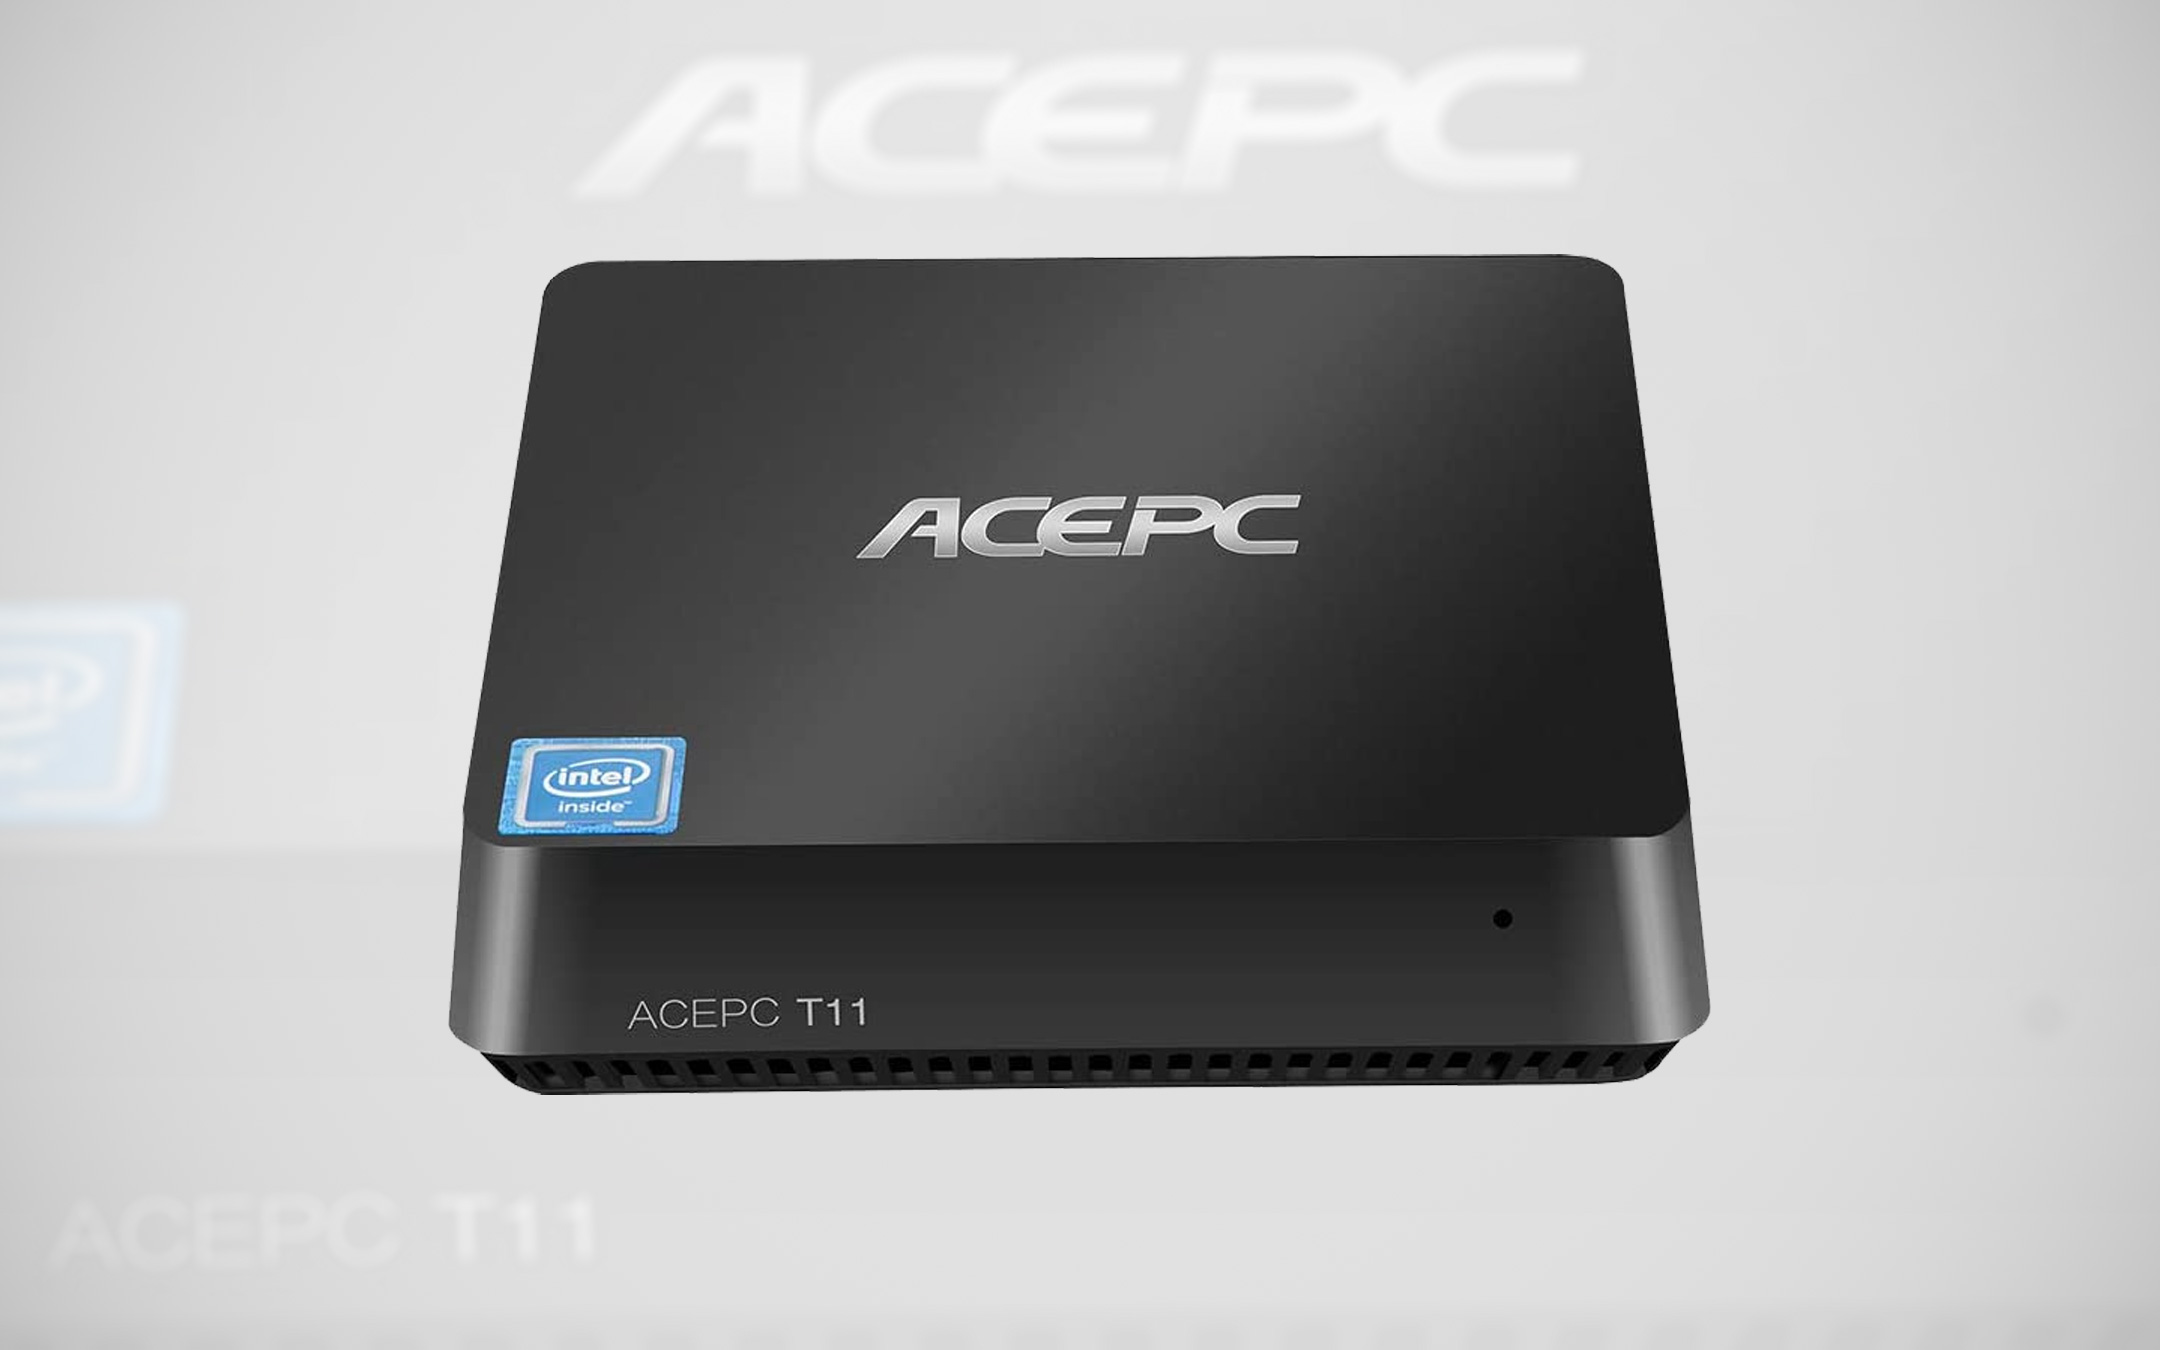 processore Intel e Windows 10 Pro per ACEPC T11, sconto 15%